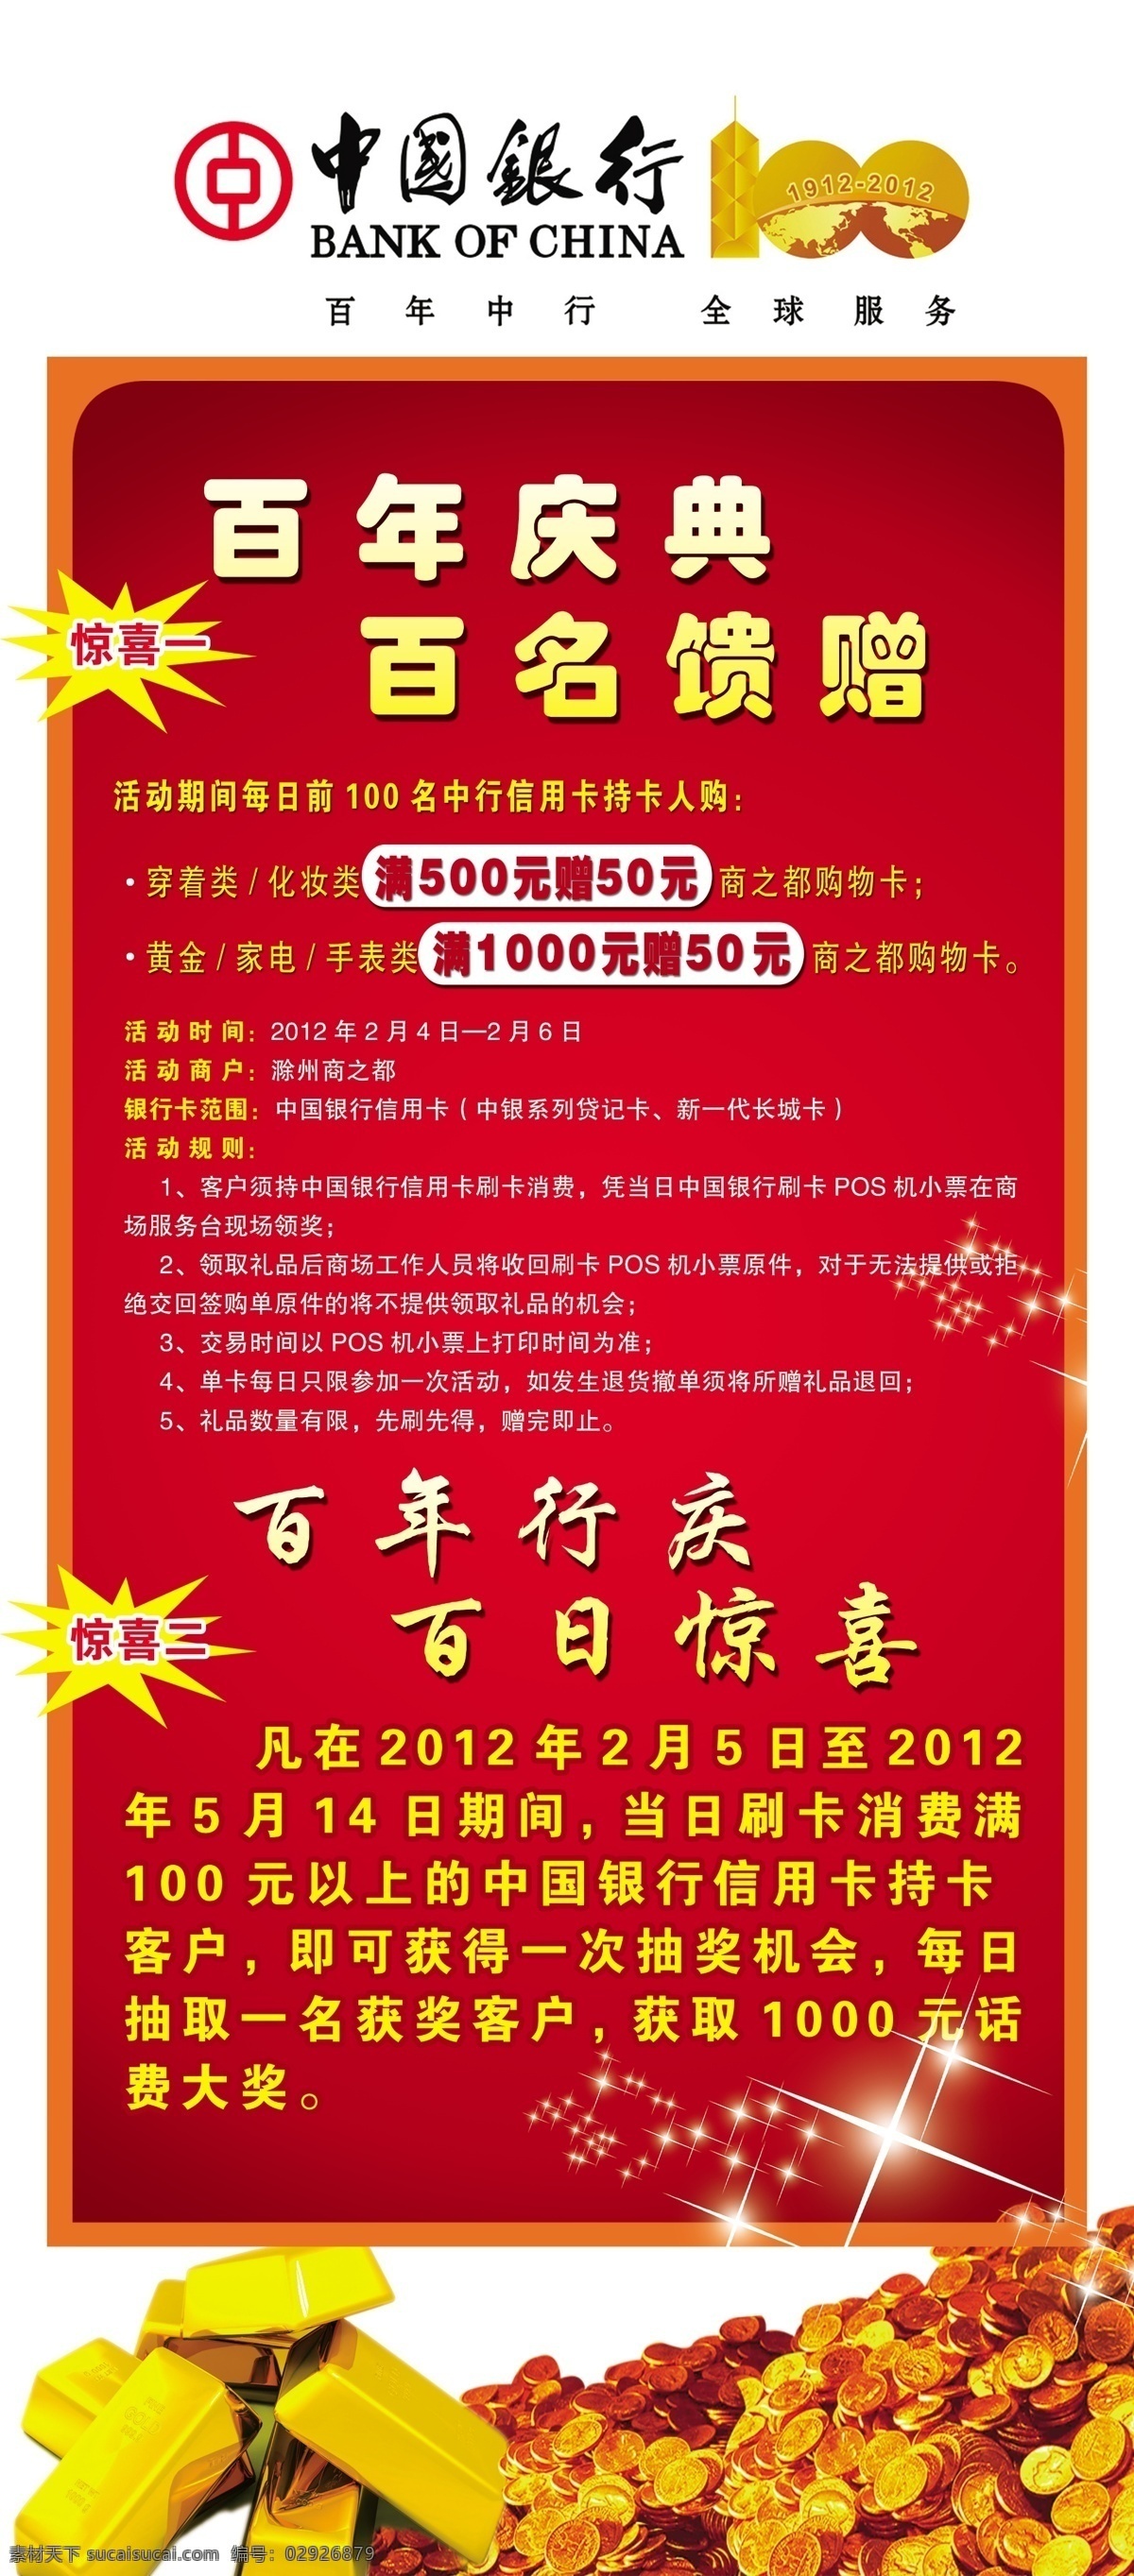 中国银行展架 中国银行 展架 中国银行标志 logo 春意盎然 艺术 字 金块 金币 星光 发光点 广告设计模板 源文件 红色